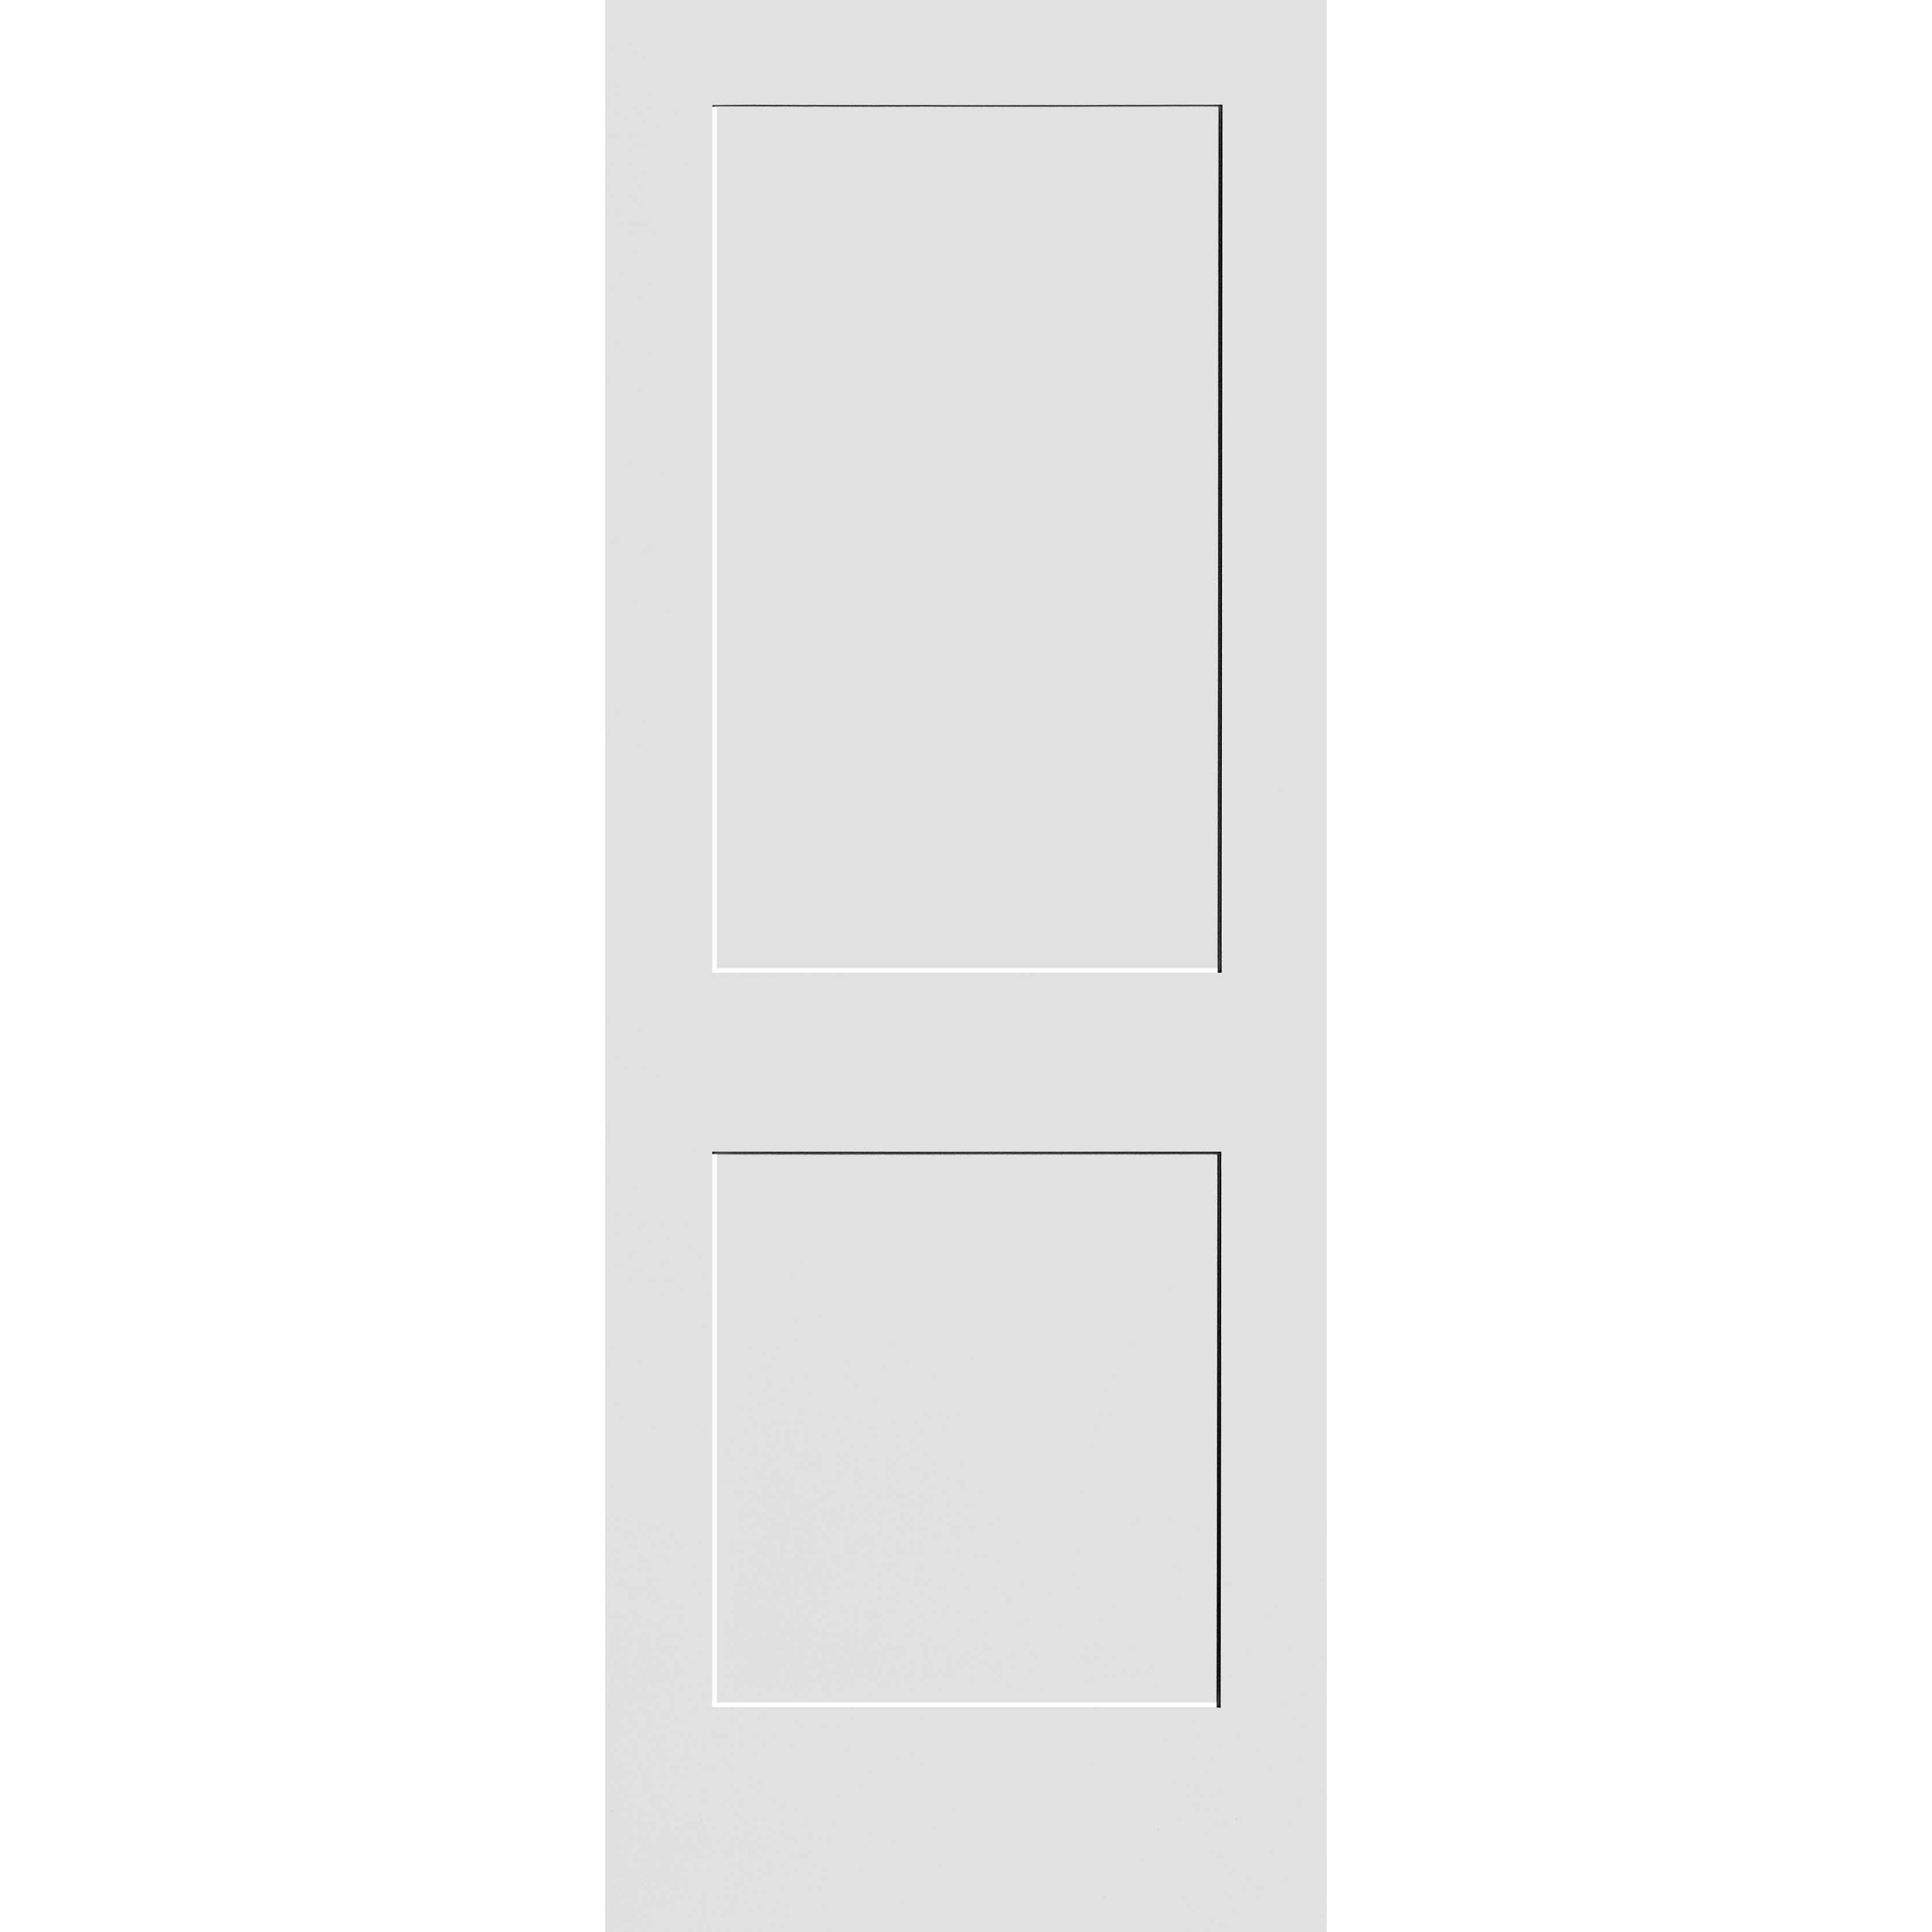 20X80 #8402 MDF PRIMED SHAKER PANEL INTERIOR DOOR